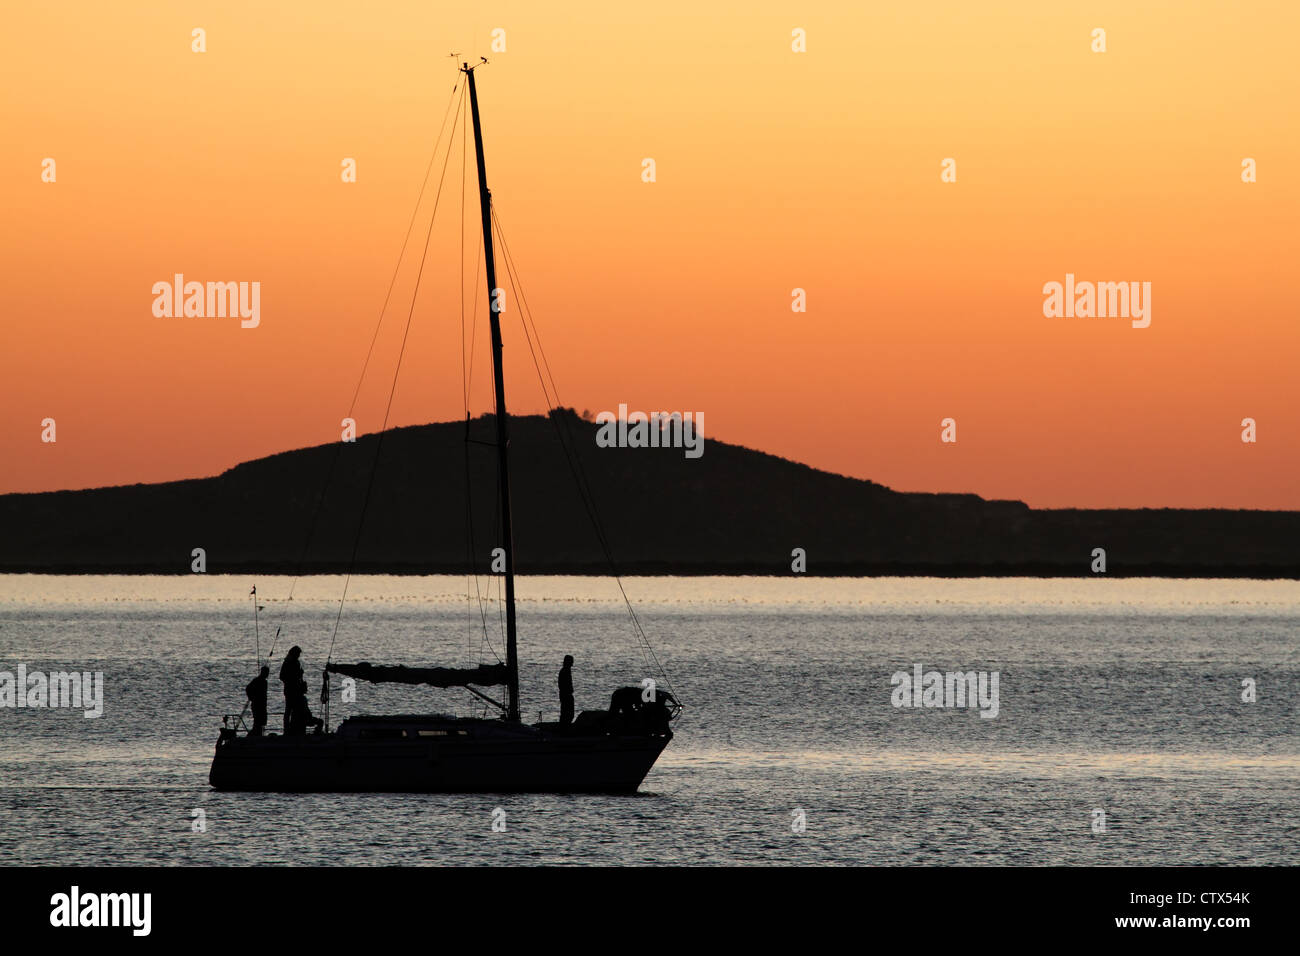 Silhouette einer Yacht gegen einen roten Sonnenuntergang mit reflektierenden Wasser Stockfoto